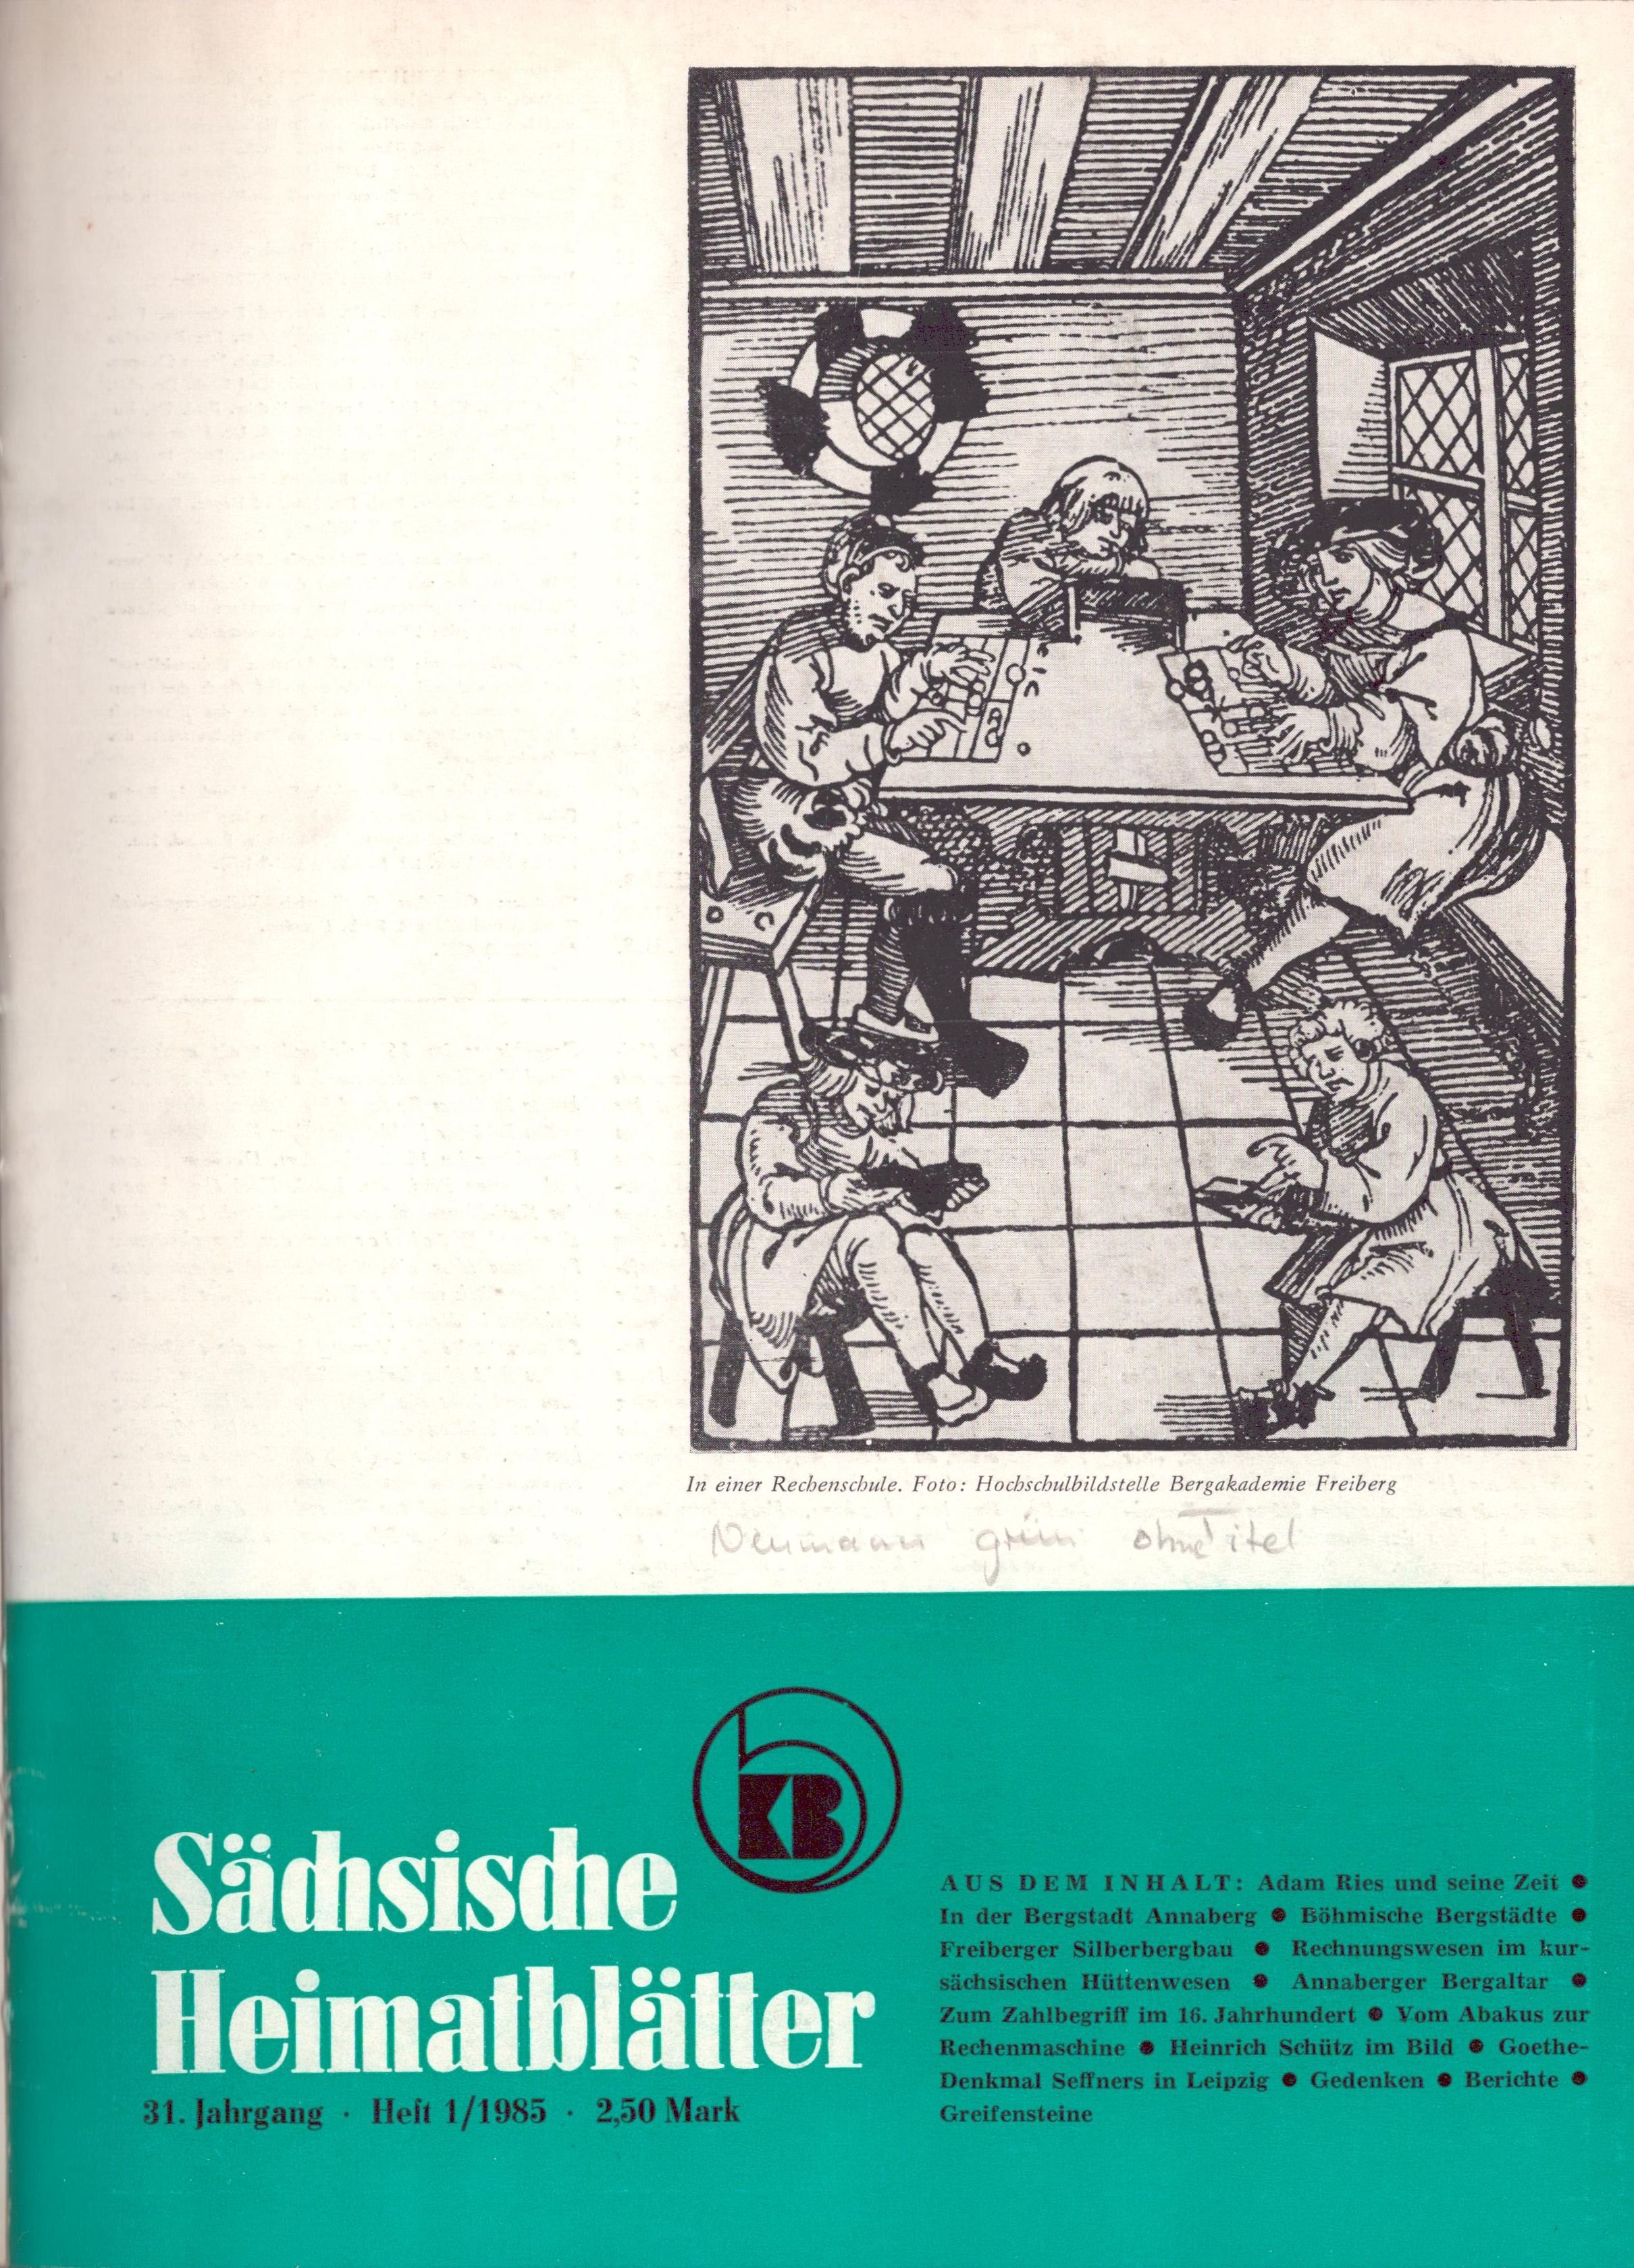 Sächsische Heimatblätter 31. Jahrgang - Heft 1 - 6/1985 (Archiv SAXONIA-FREIBERG-STIFTUNG CC BY-NC-SA)